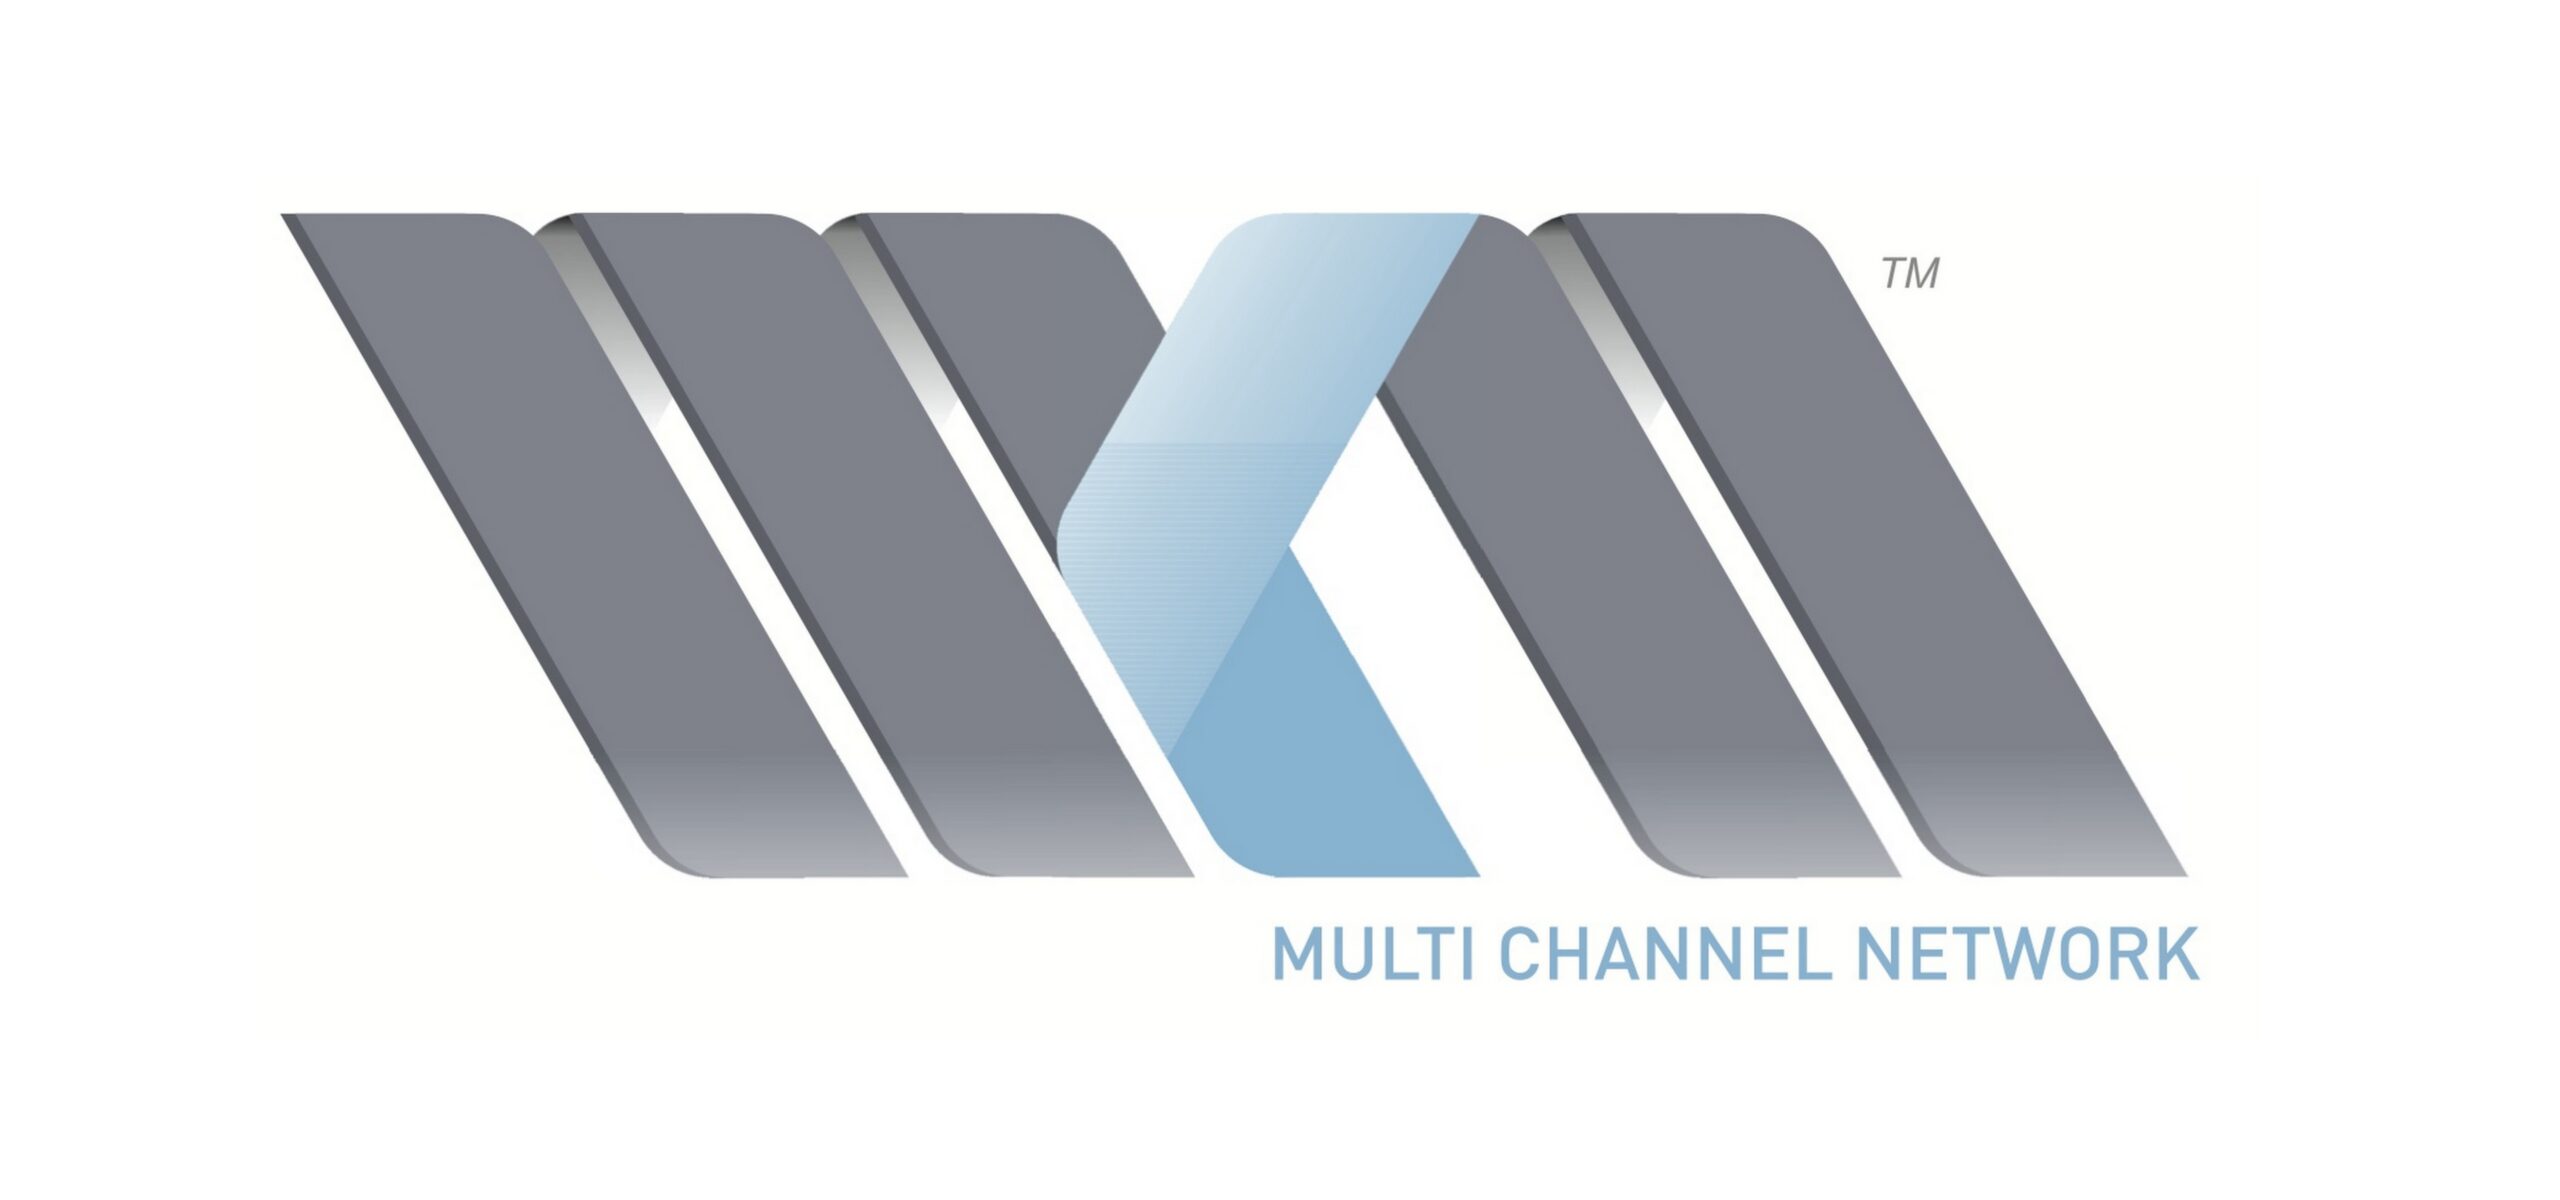 Nowa sieć reklamowa wchodzi na rynek Technologie Mediarun Com Multi Channel Network scaled